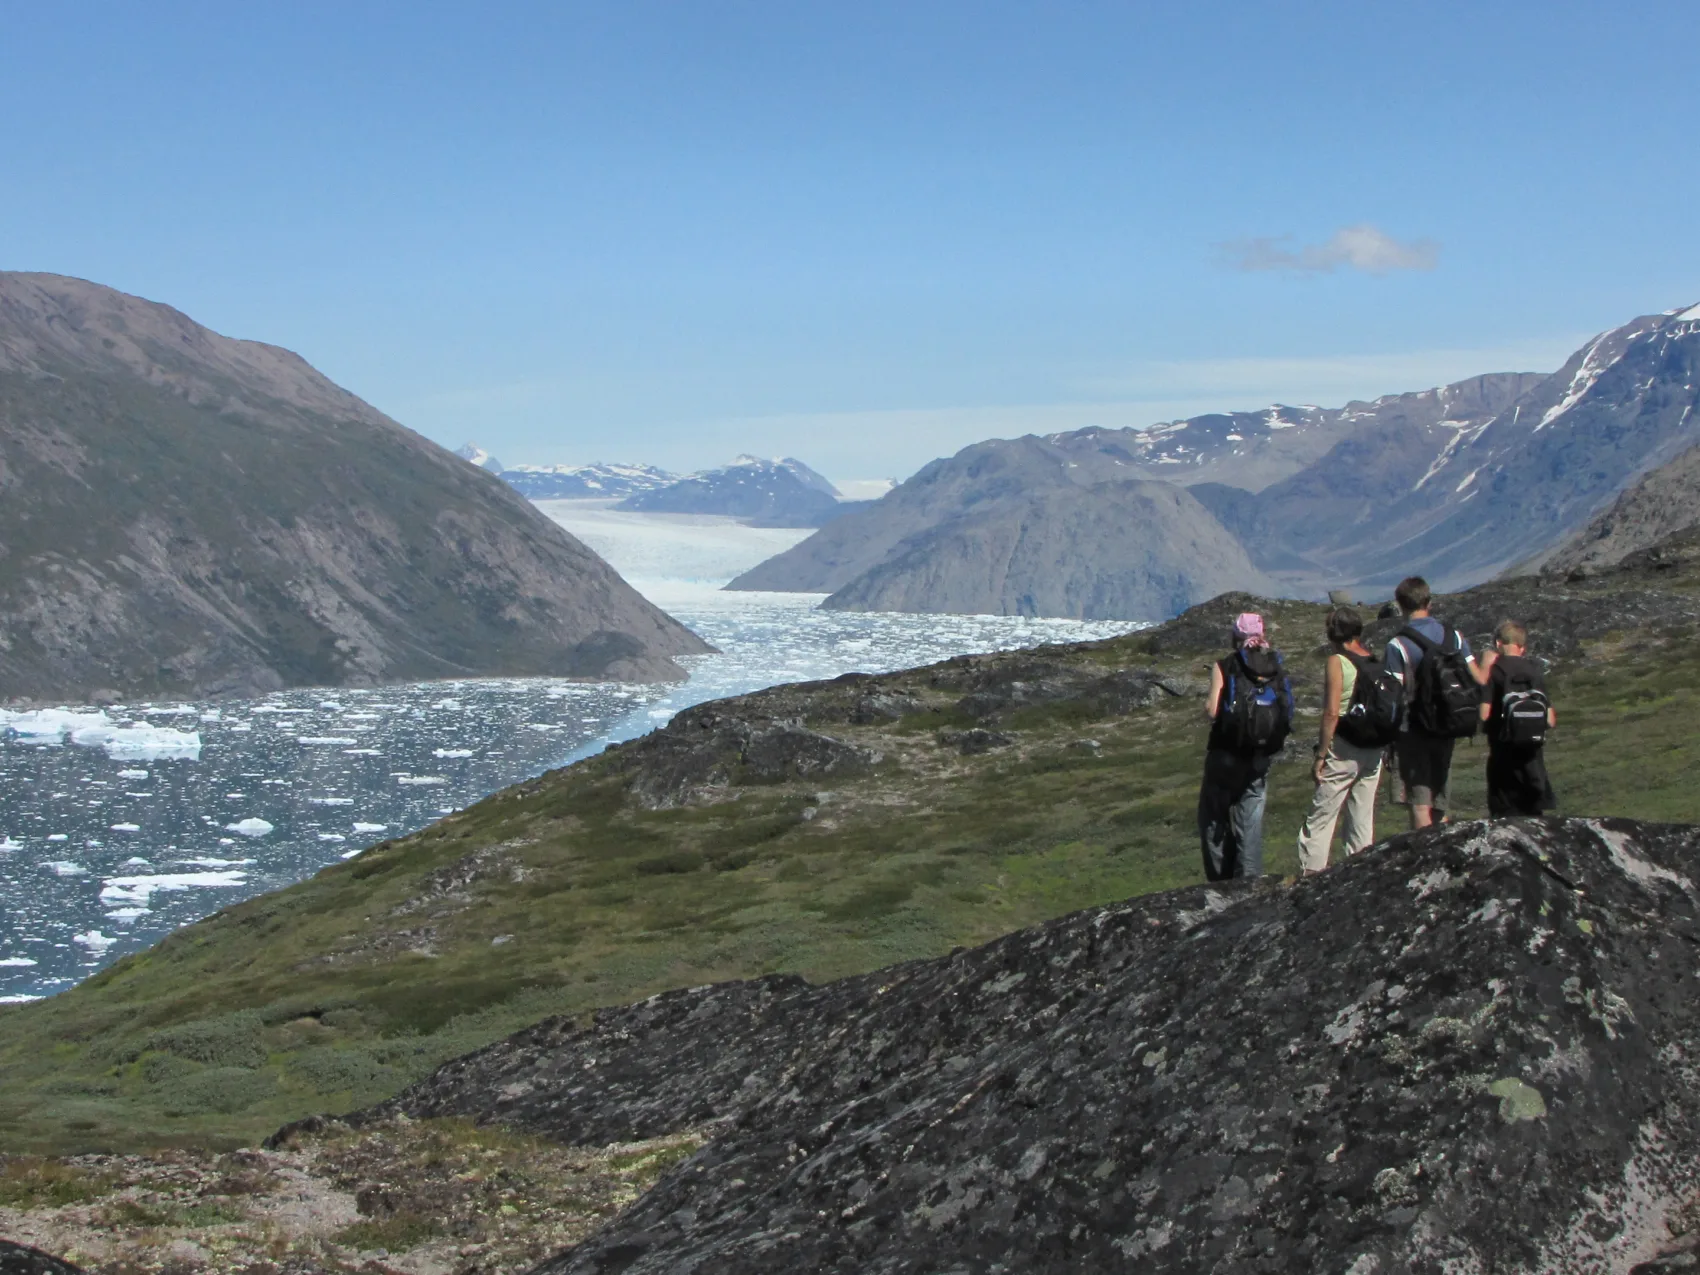 Südgrönland: Wanderung Igaliku
Vier Wanderer blicken auf einen Fjord